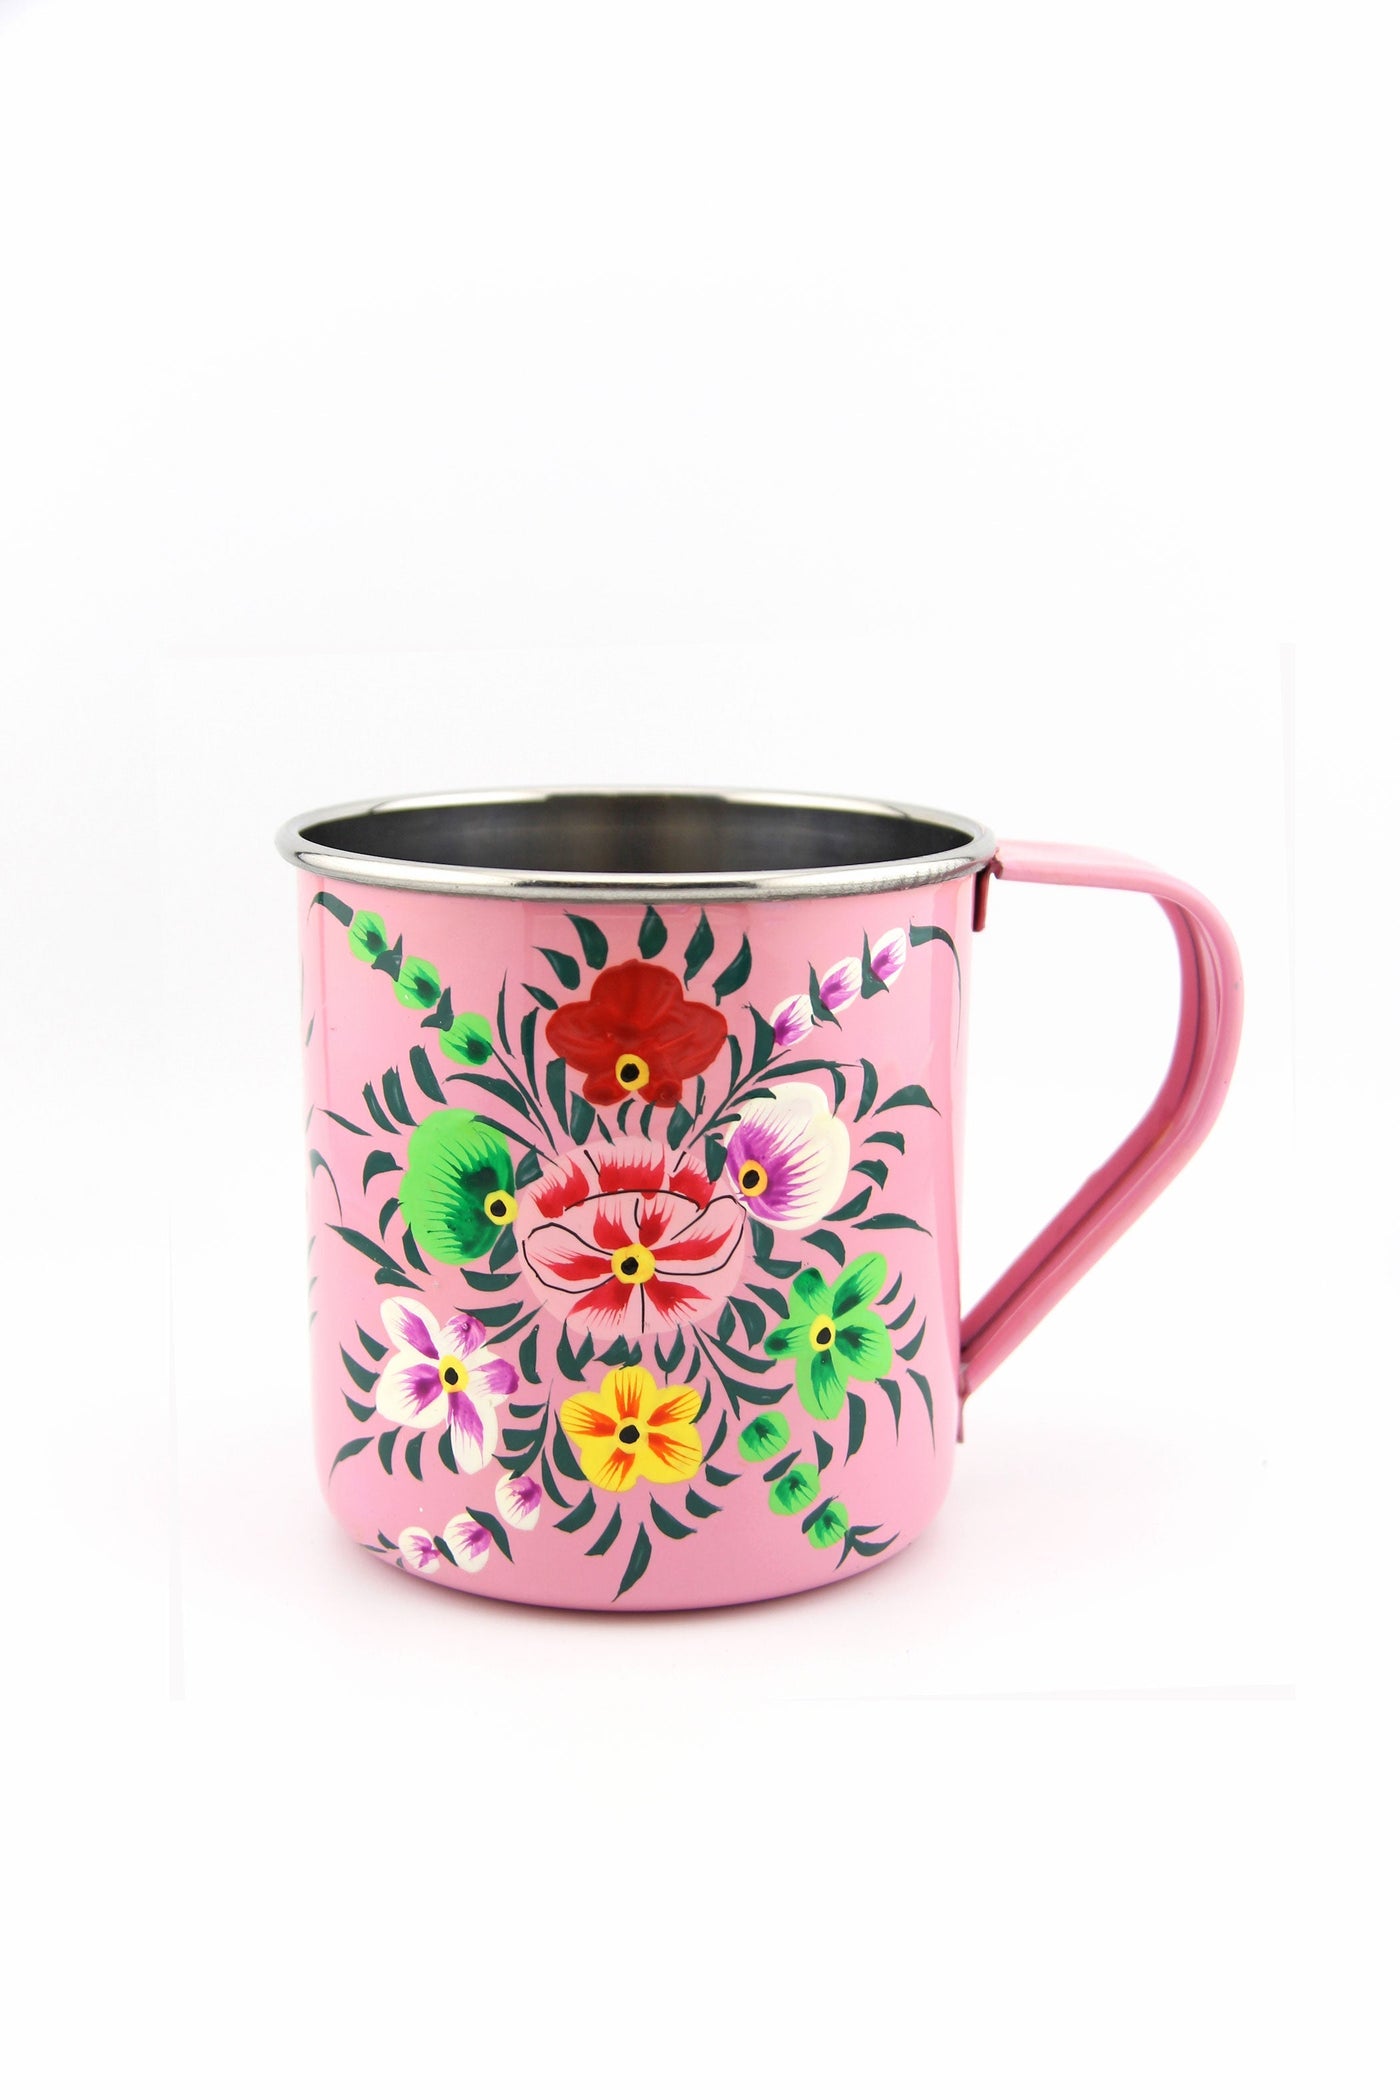 Floral Handpainted Stainless Steel Enamel Mug from Kashmir